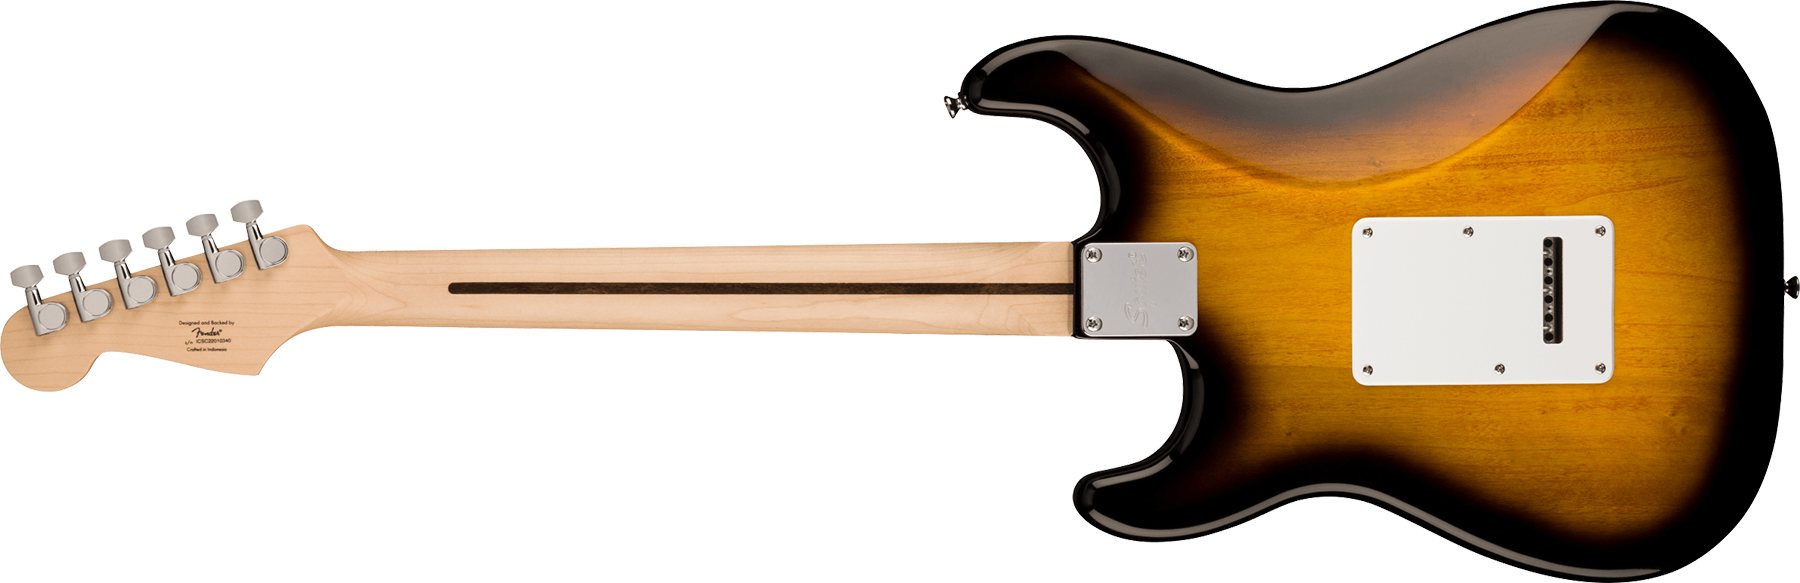 Squier Sonic Strat Pack 3s Trem Mn - 2-color Sunburst - Electric guitar set - Variation 3